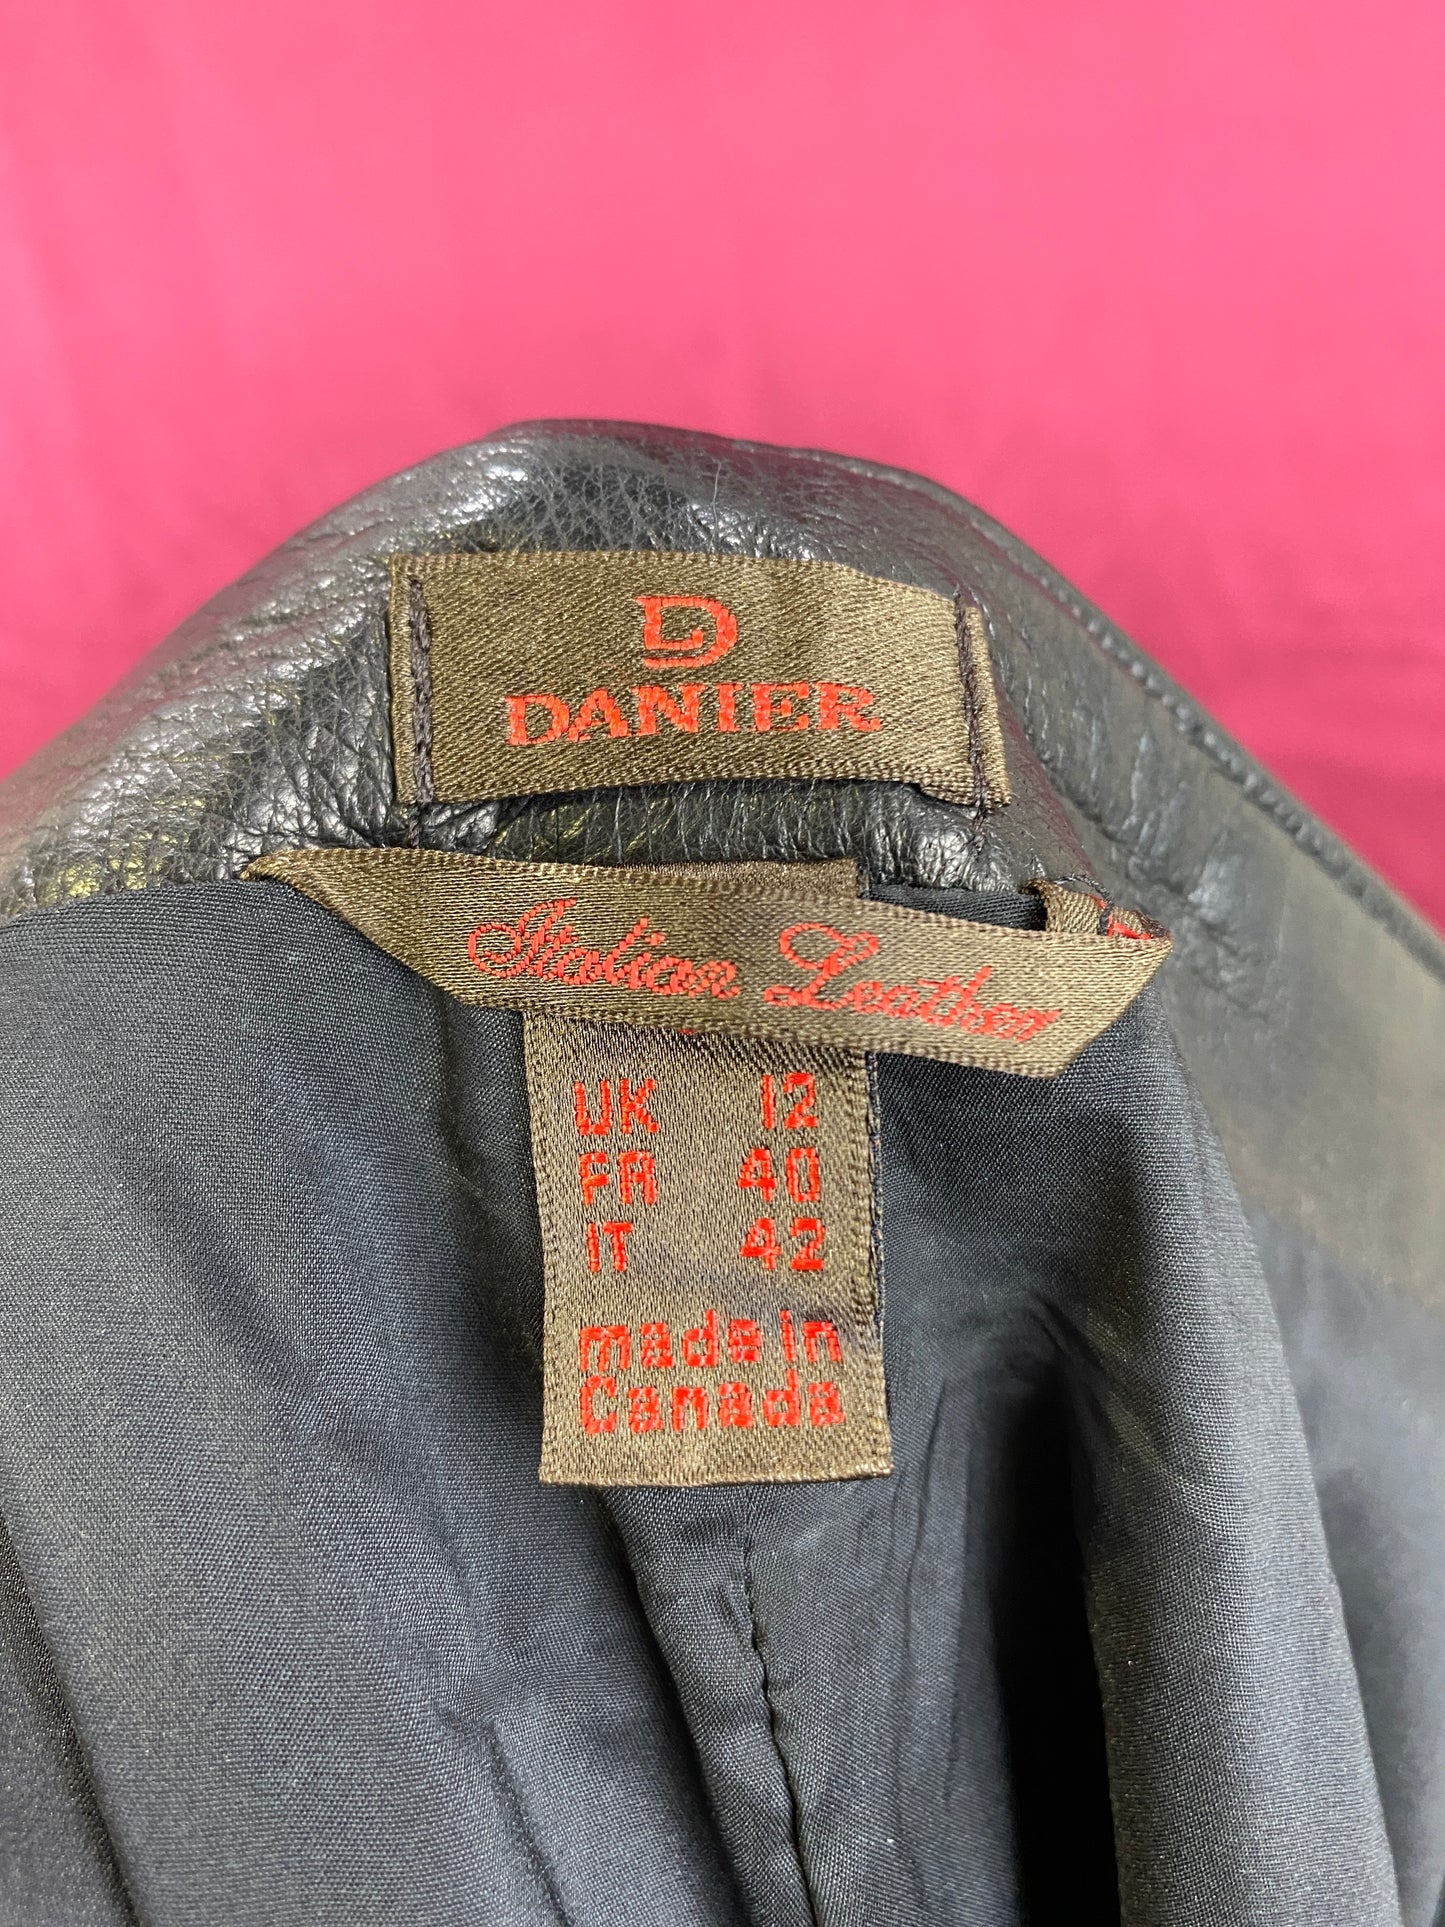 Danier Y2K Black leather Pants, W30"